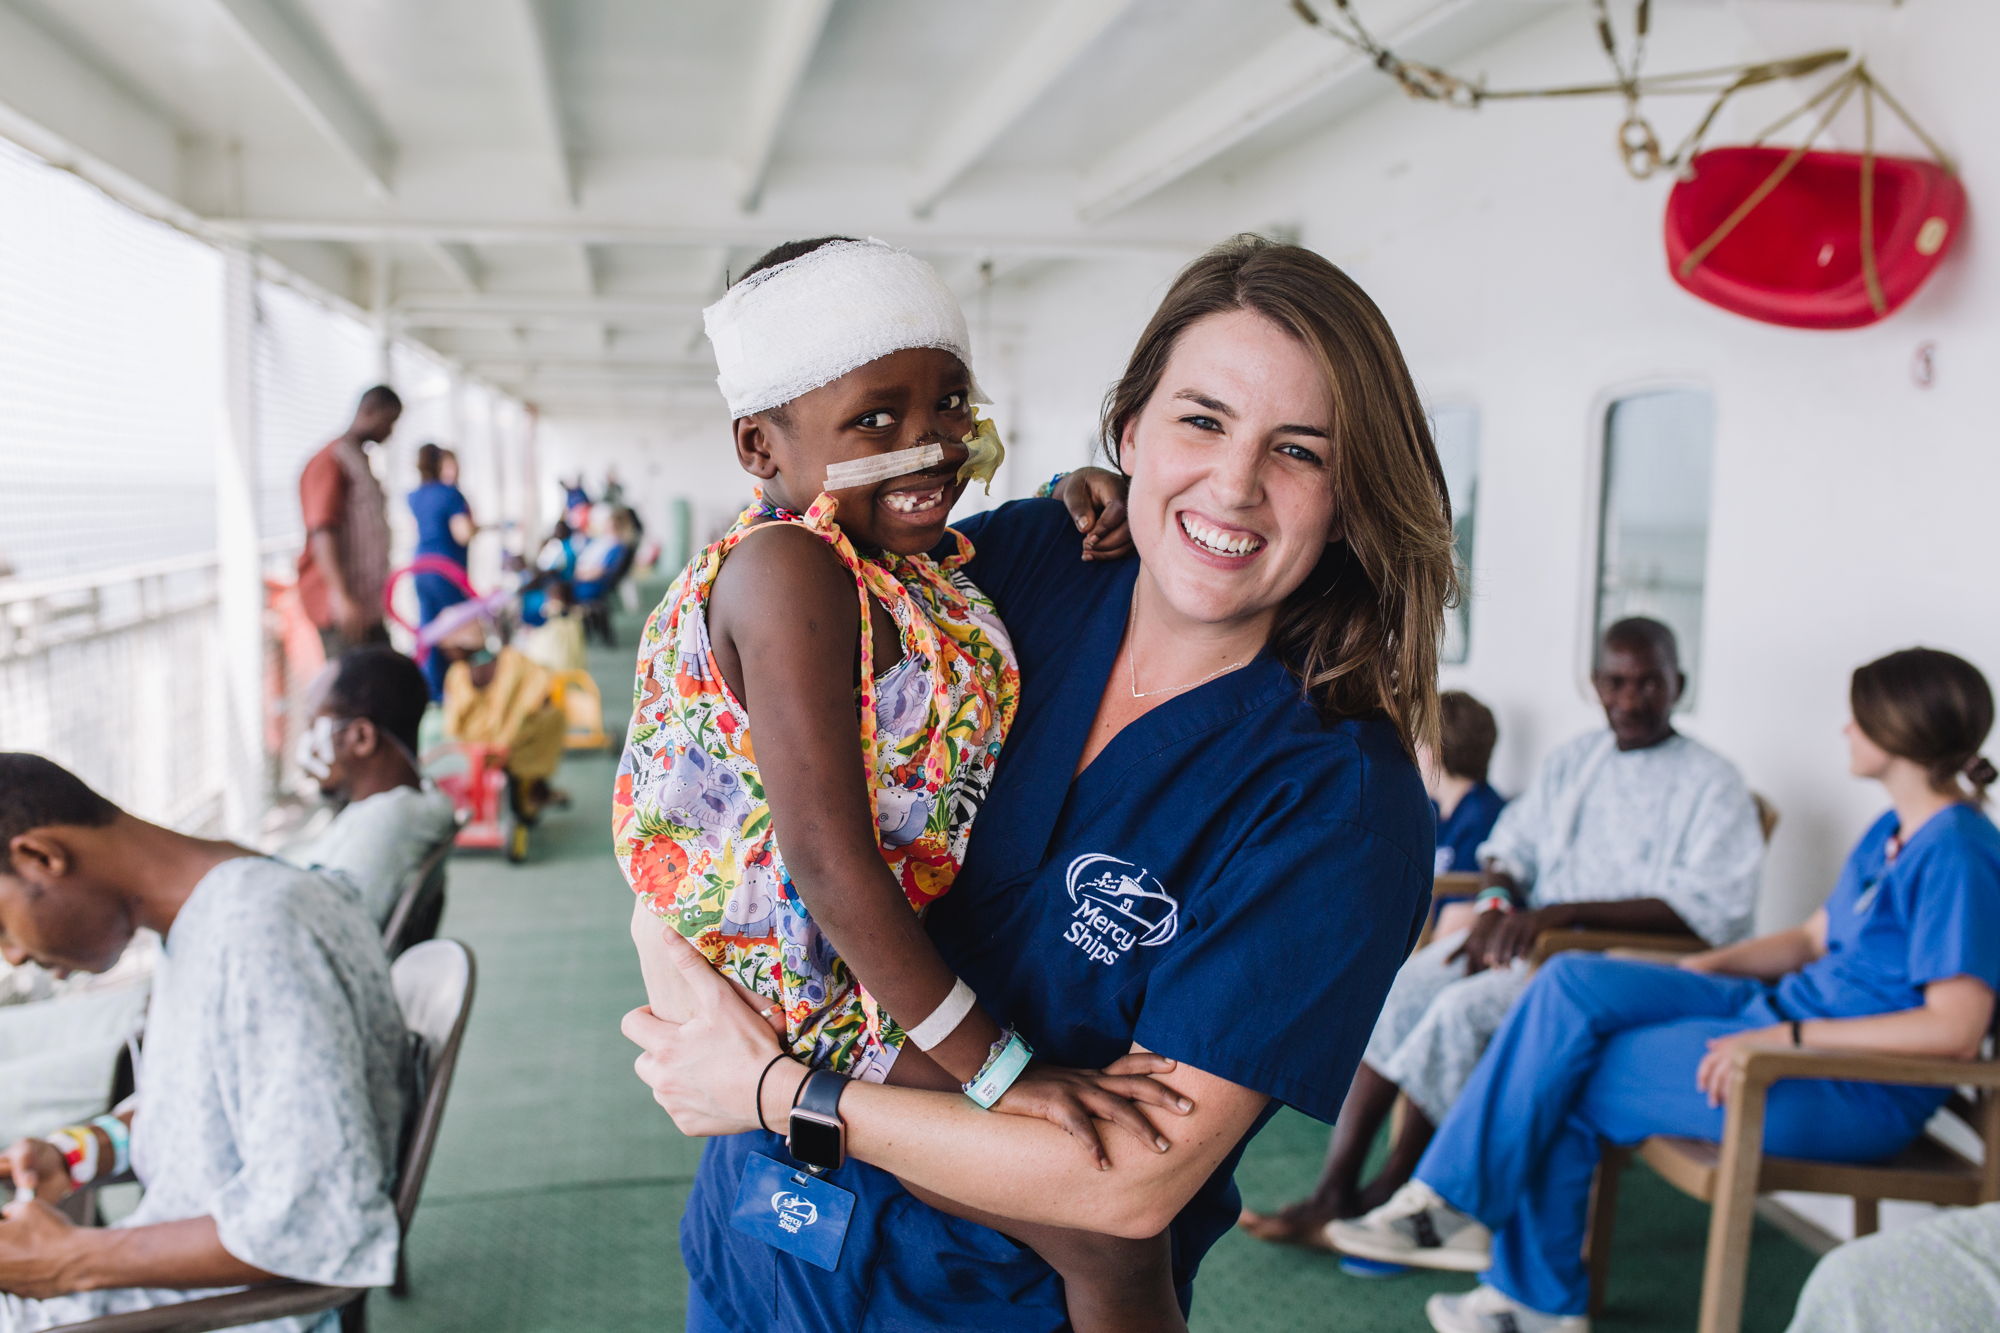 Alle Mitarbeiter an Bord arbeiten ehrenamtlich und kümmern sich mit Herzblut um die kleinen und großen Patienten an Bord. © Mercy Ships